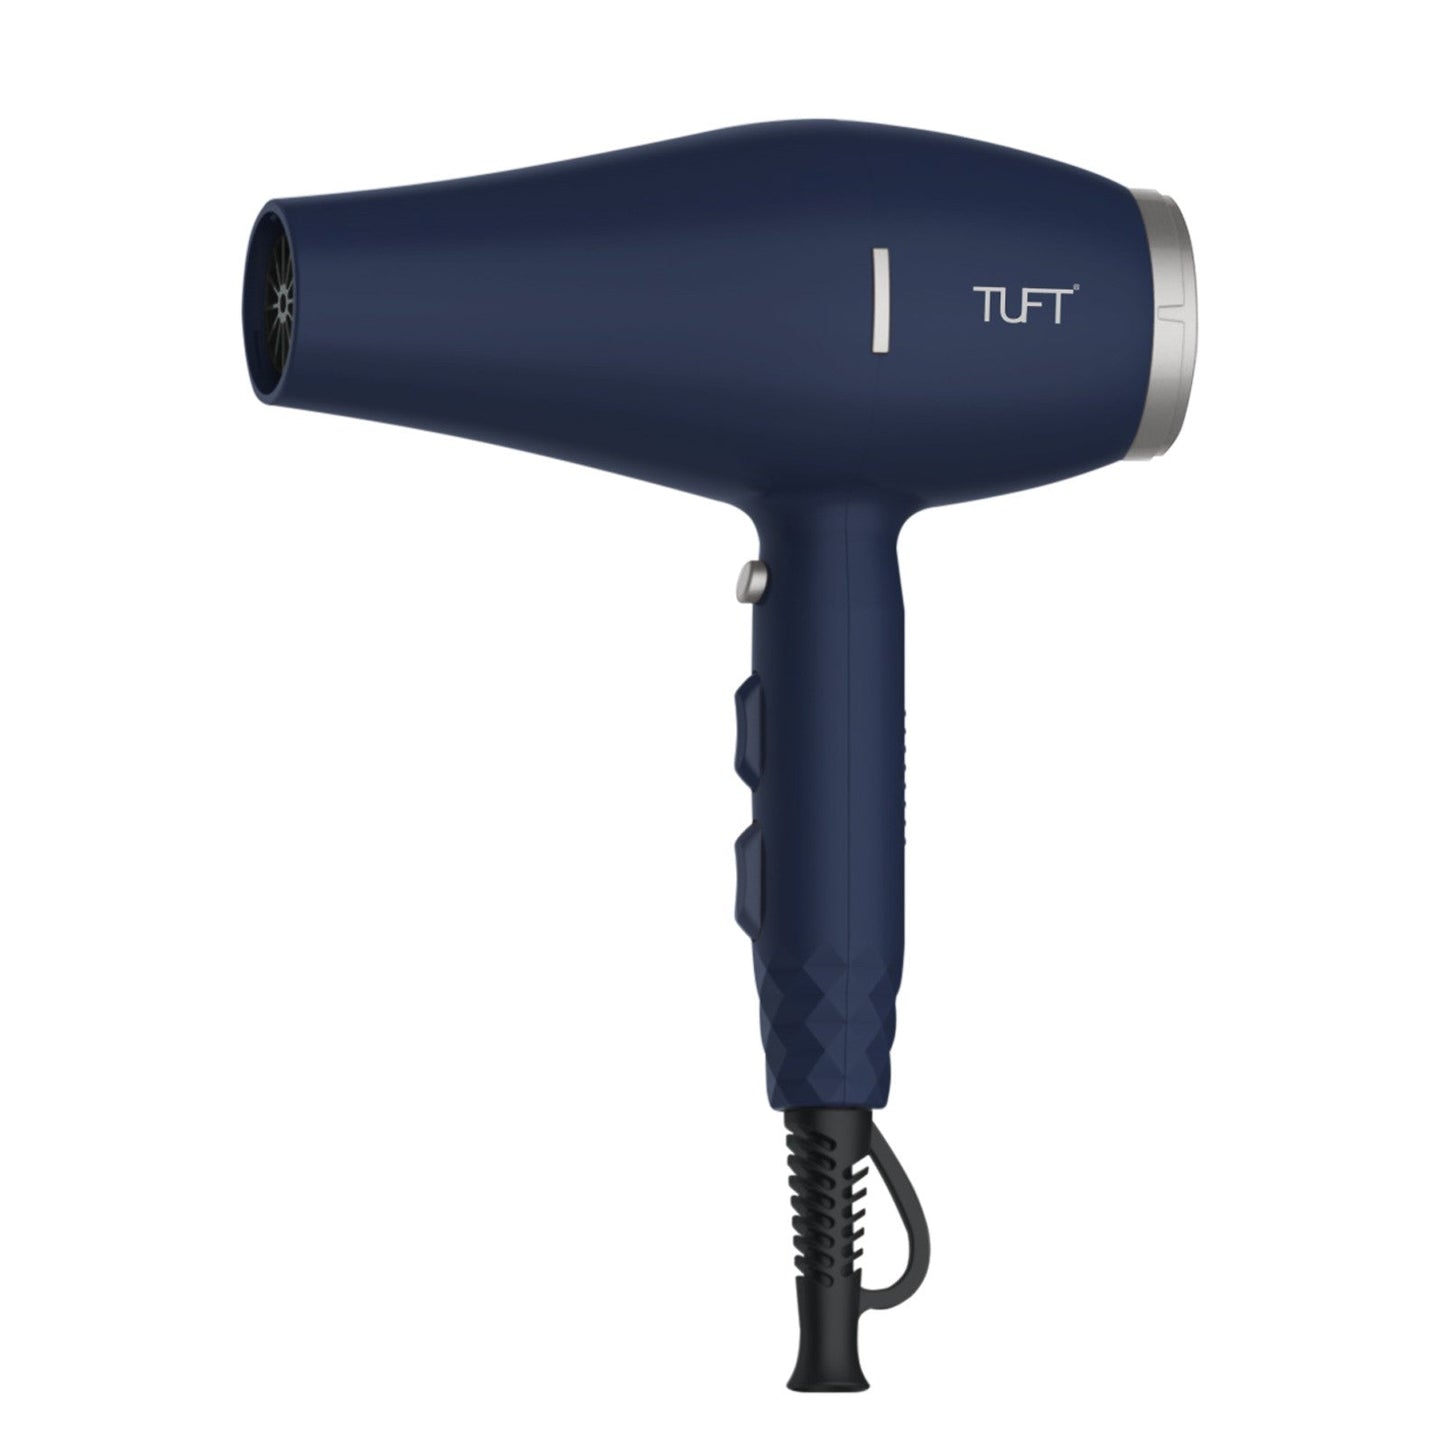 TUFT Classic Plus Professional Hair Dryer Pacific Ocean